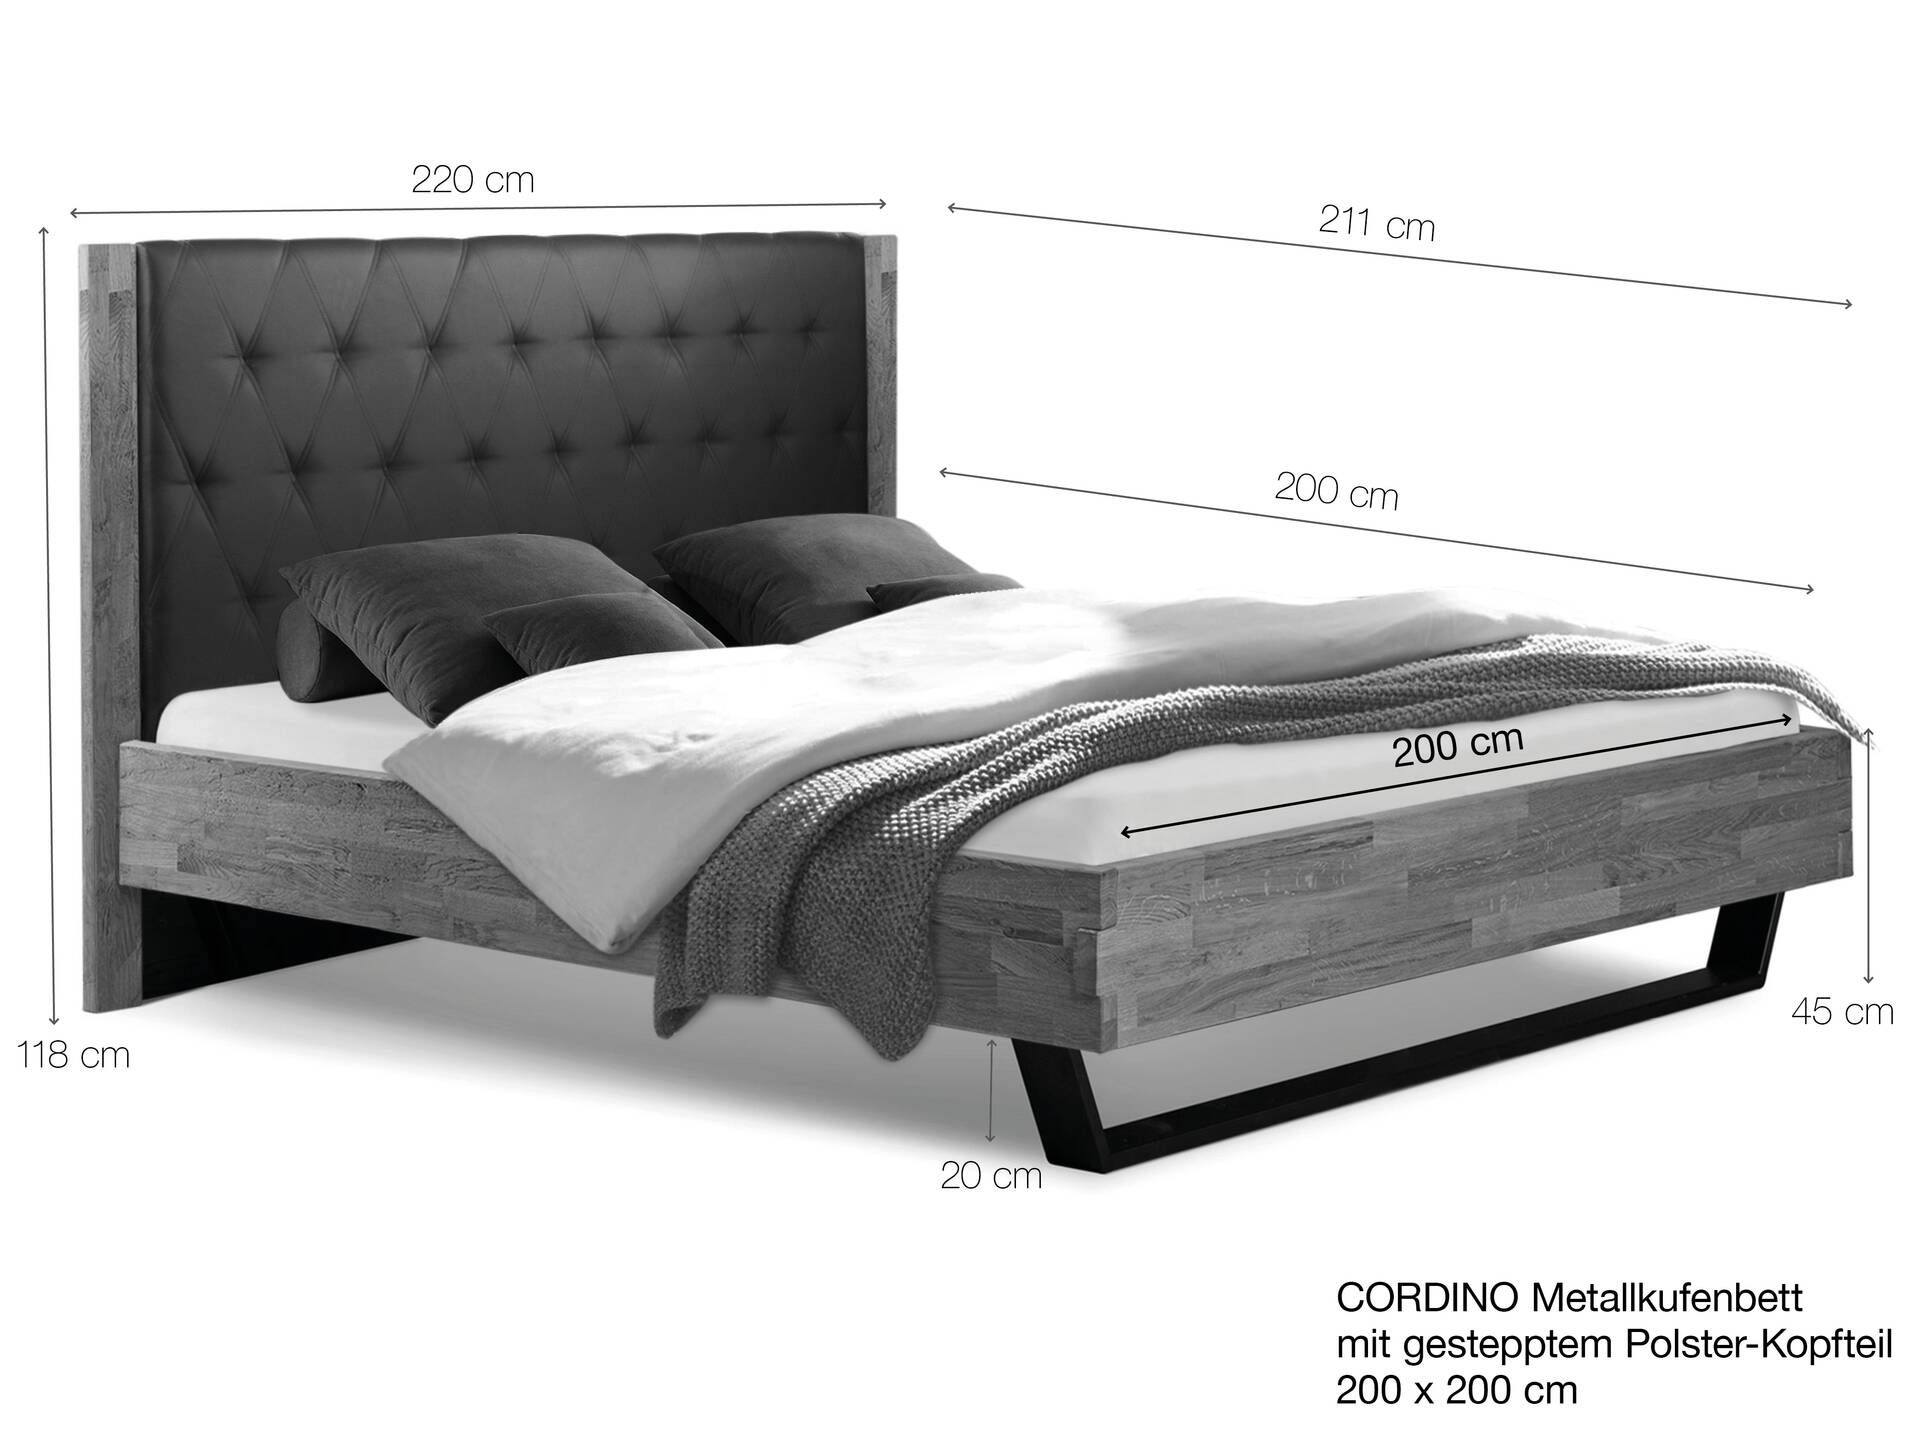 CORDINO Kufenbett aus Eiche mit gestepptem Polsterkopfteil, Material Massivholz 200 x 200 cm | Eiche lackiert | Stoff Braun | gebürstet